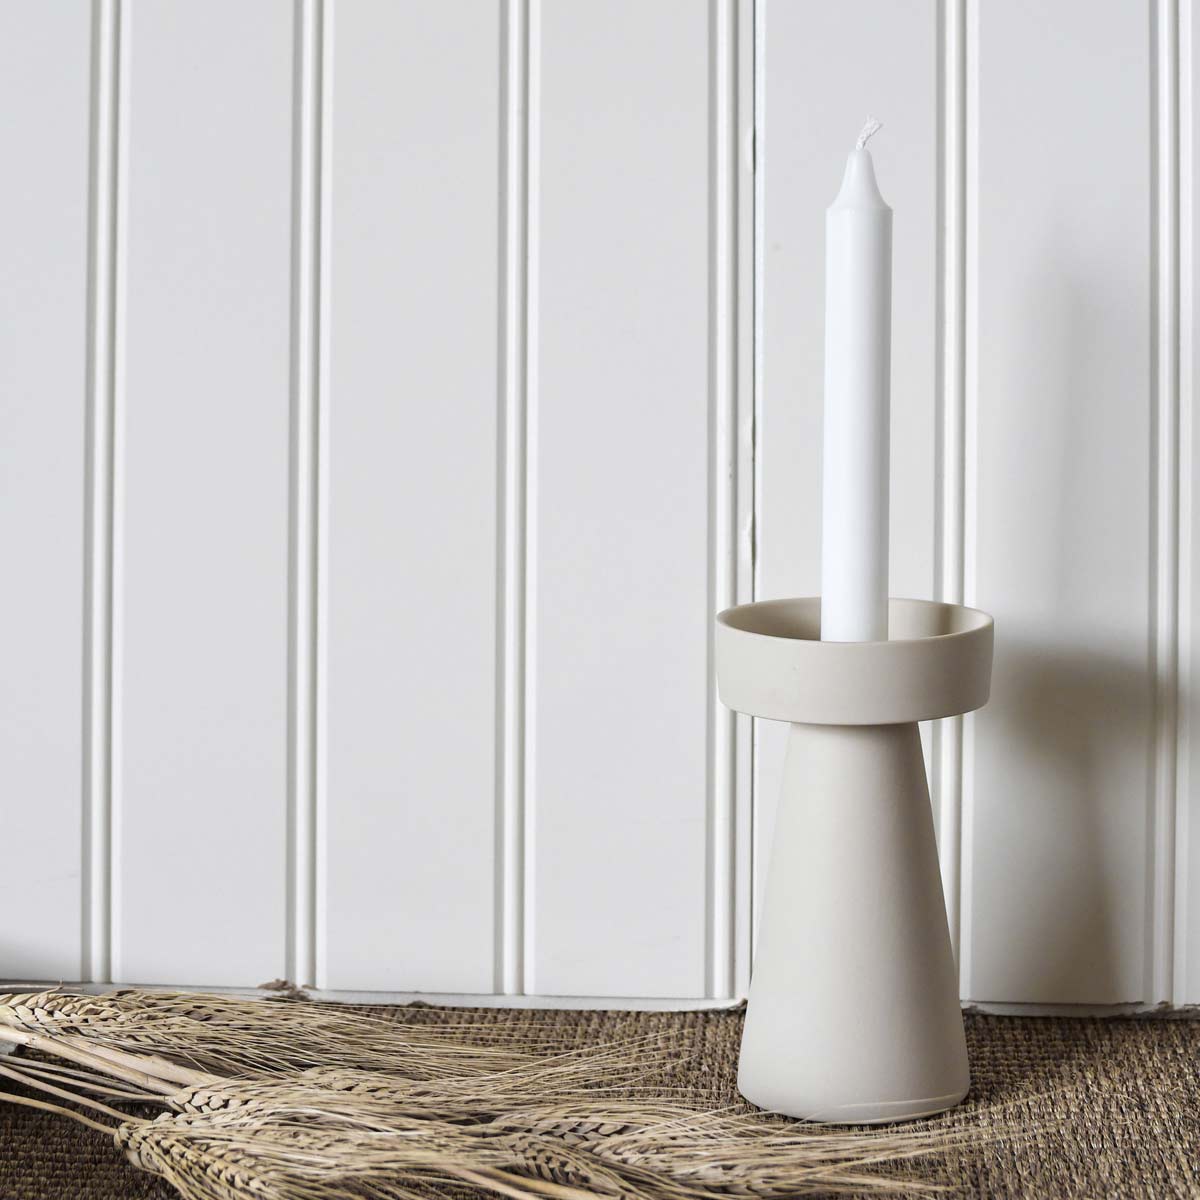 ØxH Keramik Talbo Kerzenleuchter Farbe: Weiß Storefactory : 9 x 16 cm Maße Kerzenständer 